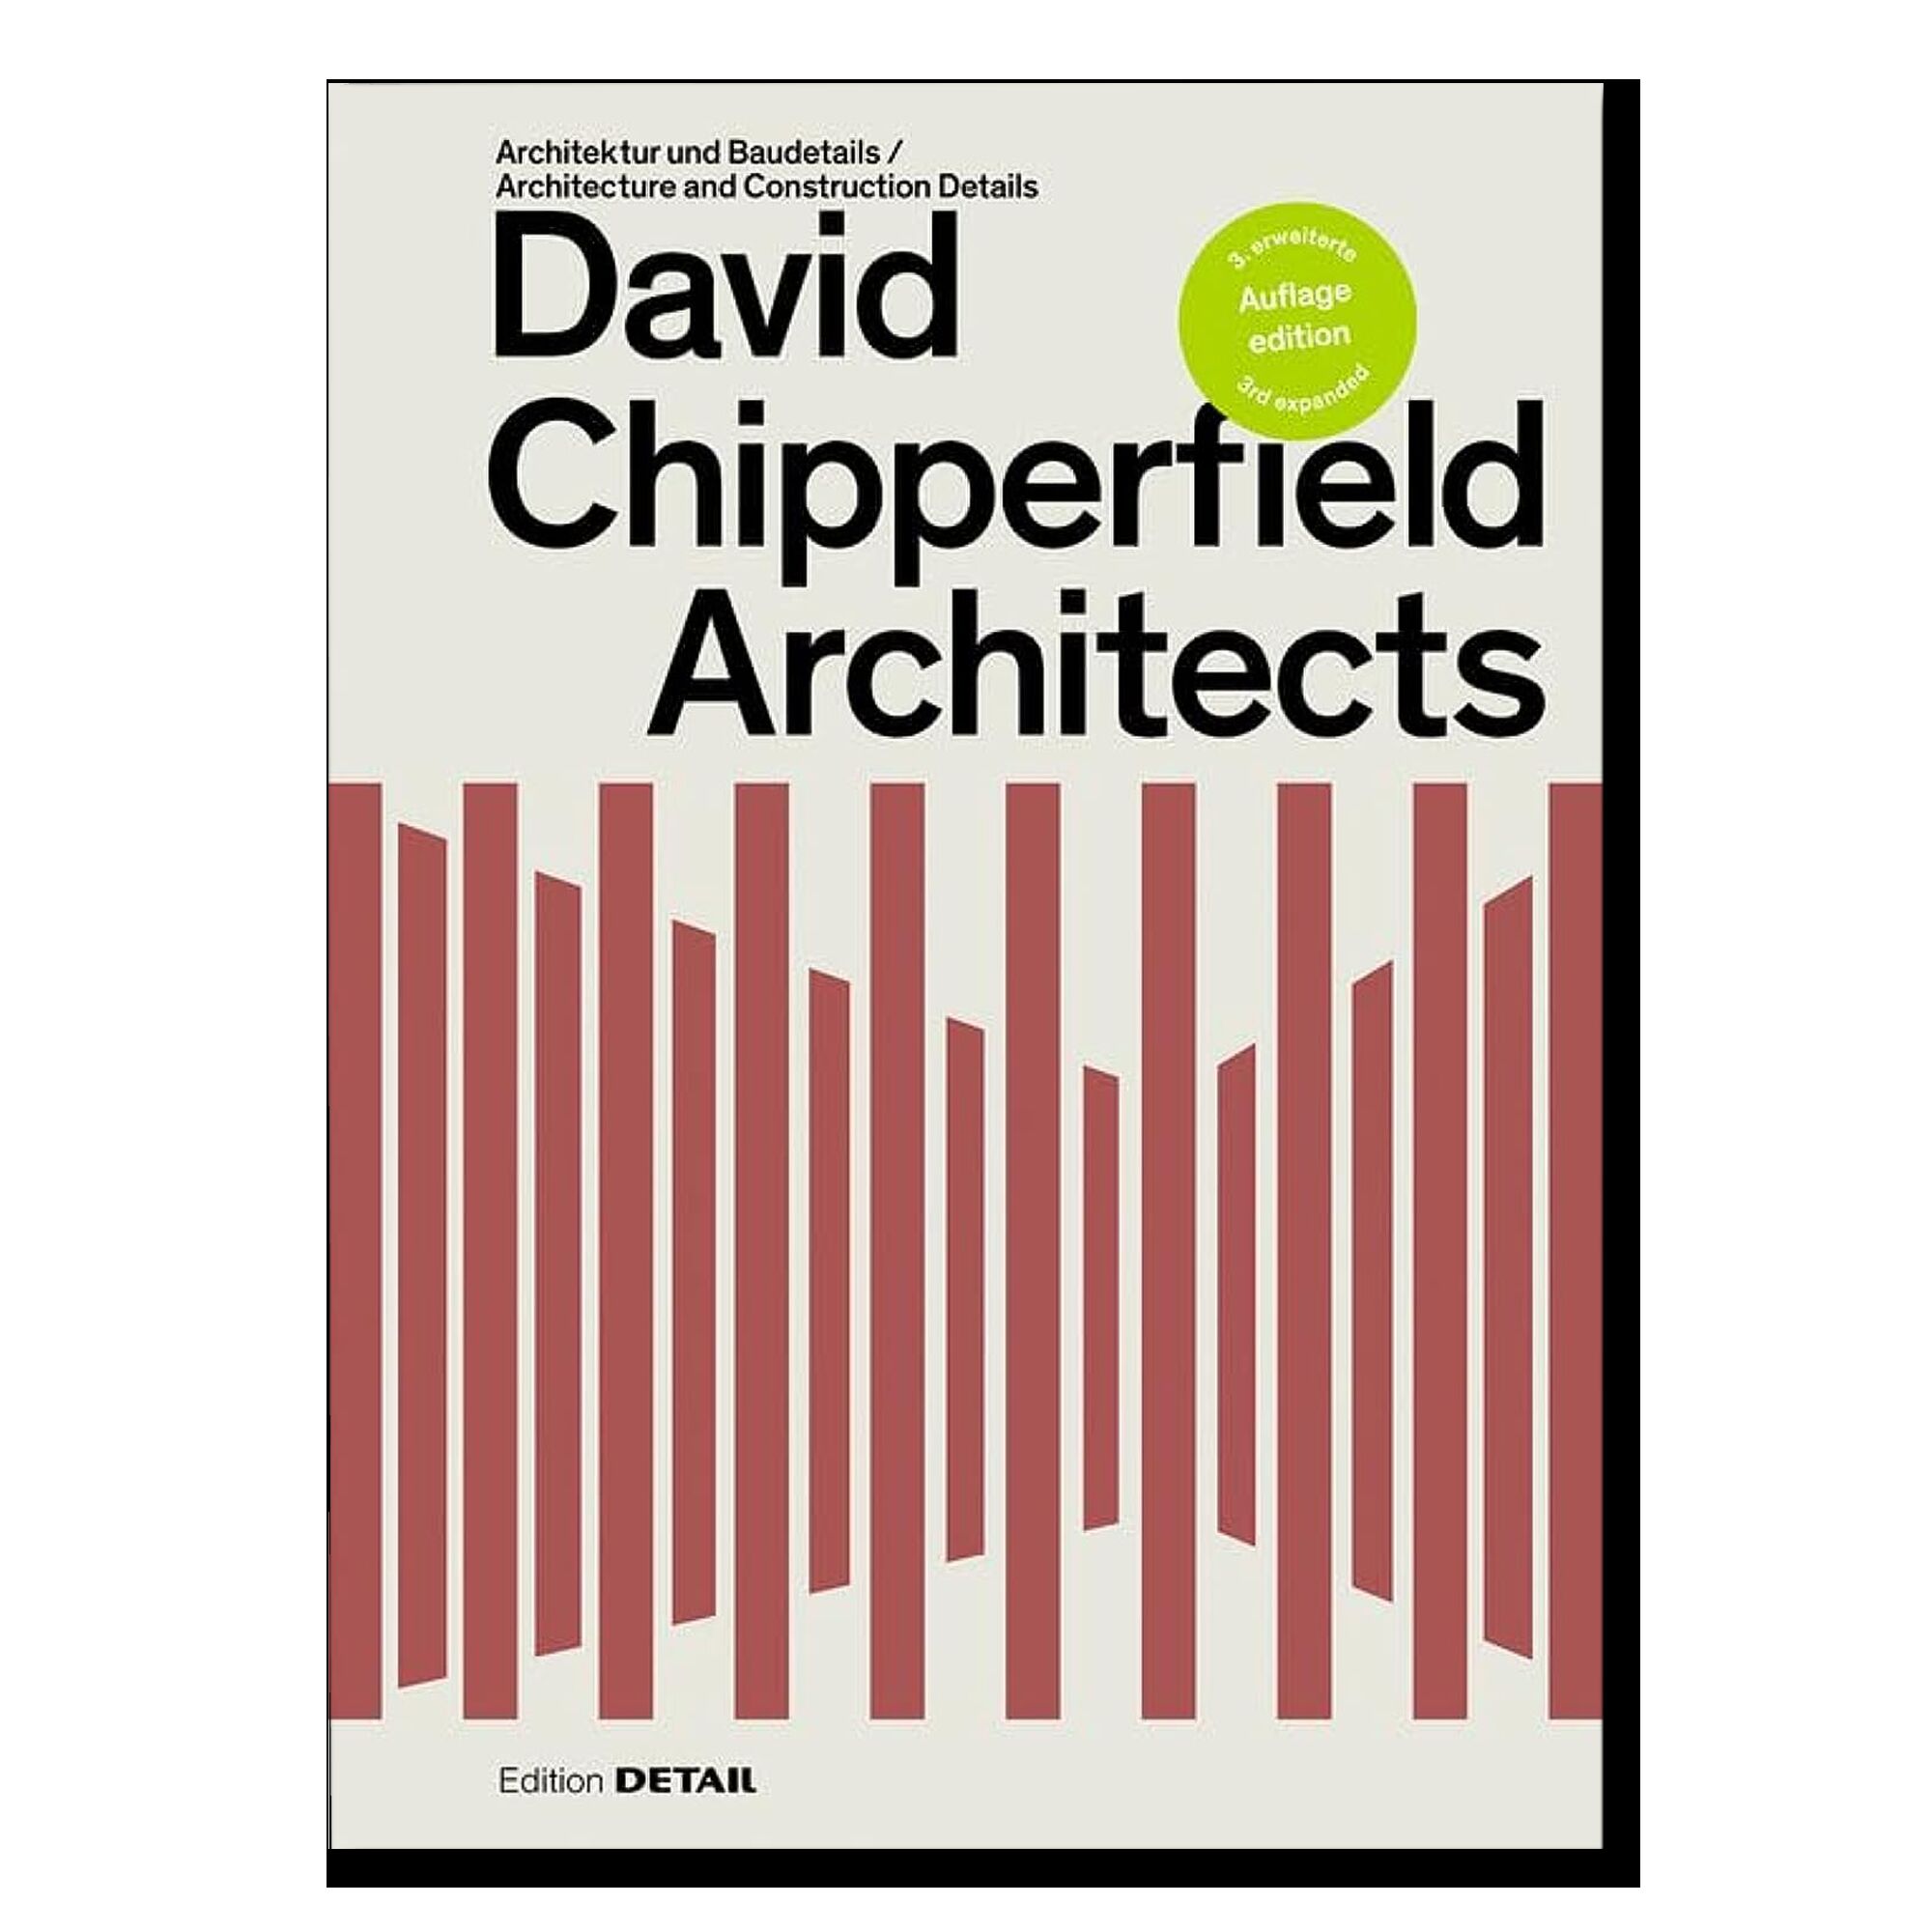 David Chipperfield Architects: Architektur und Baudetails